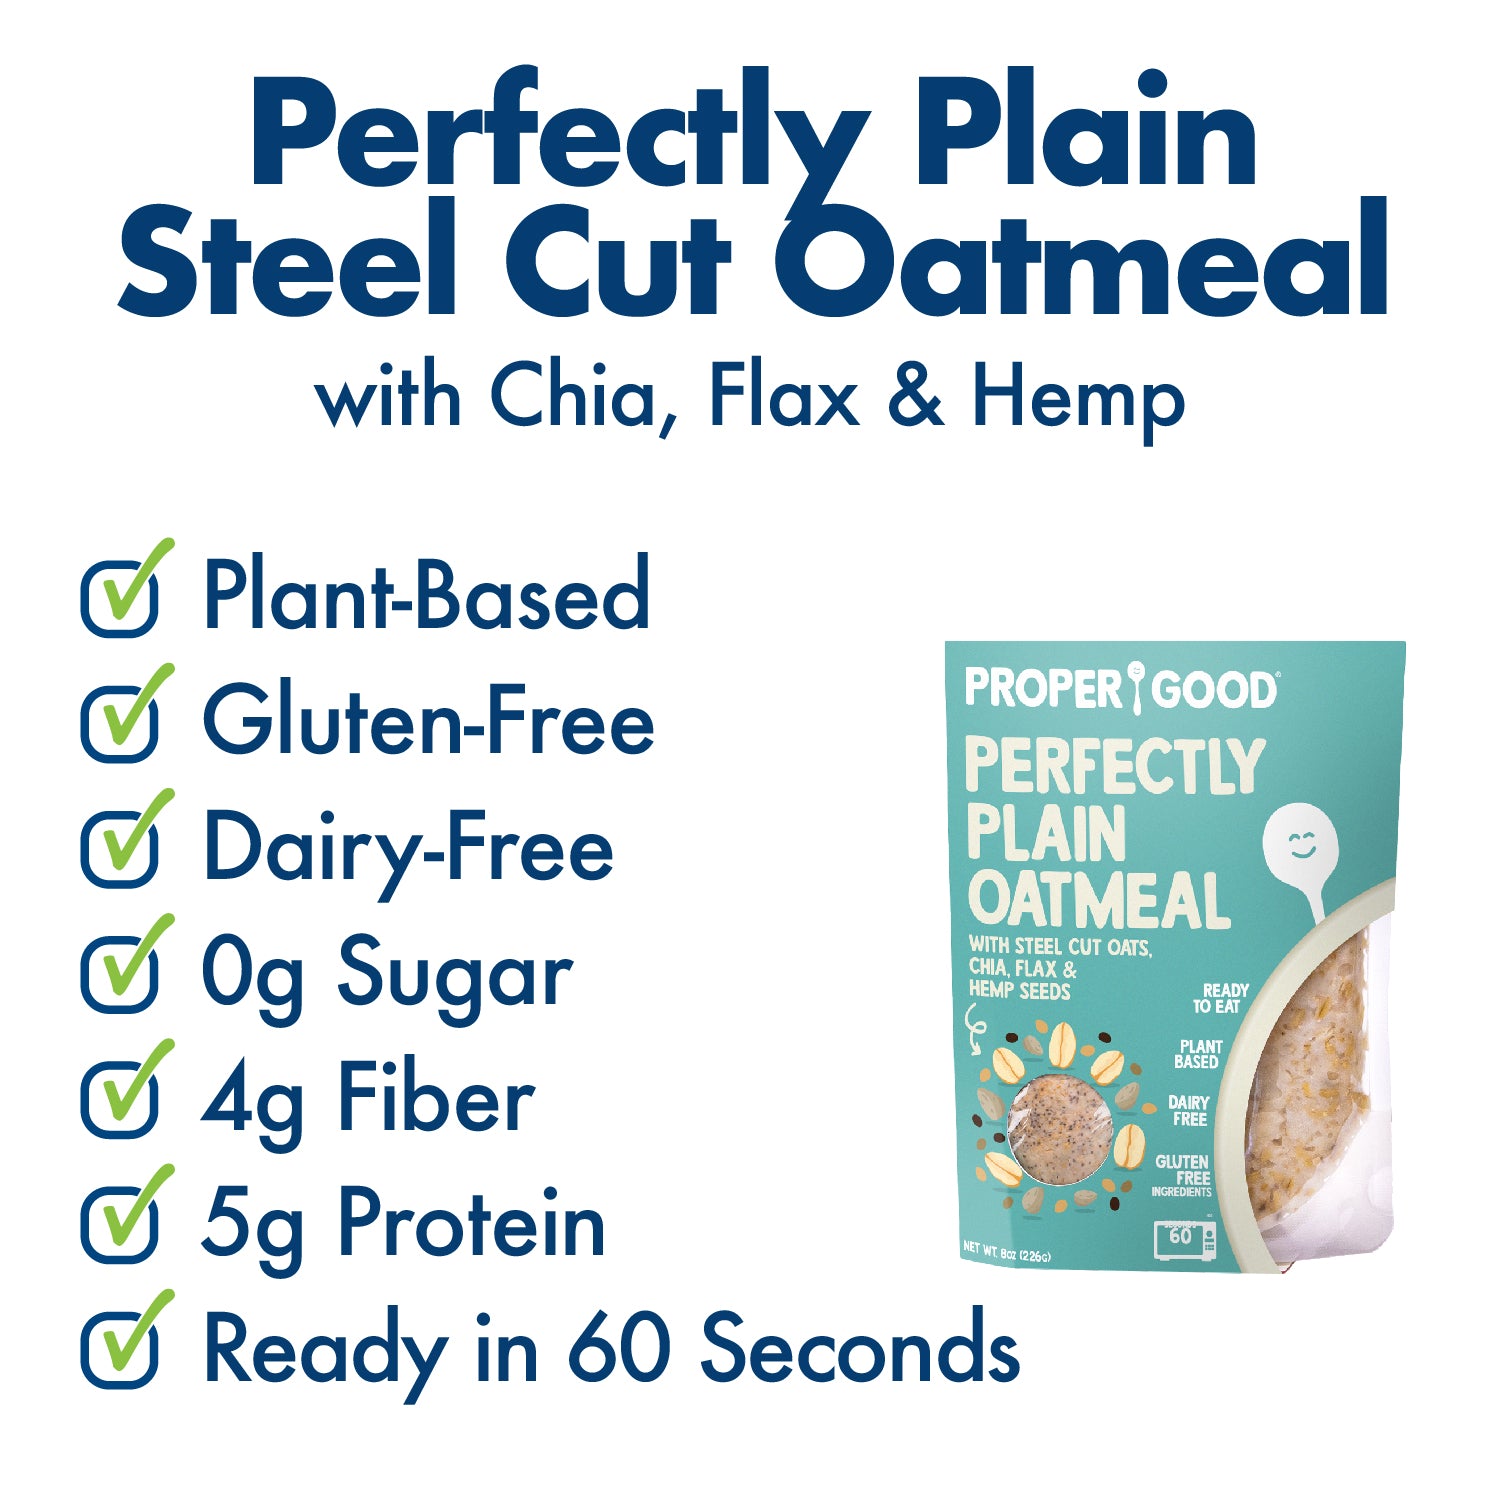 Perfectly Plain Steel Cut Oatmeal Benefits - Eat Proper Good